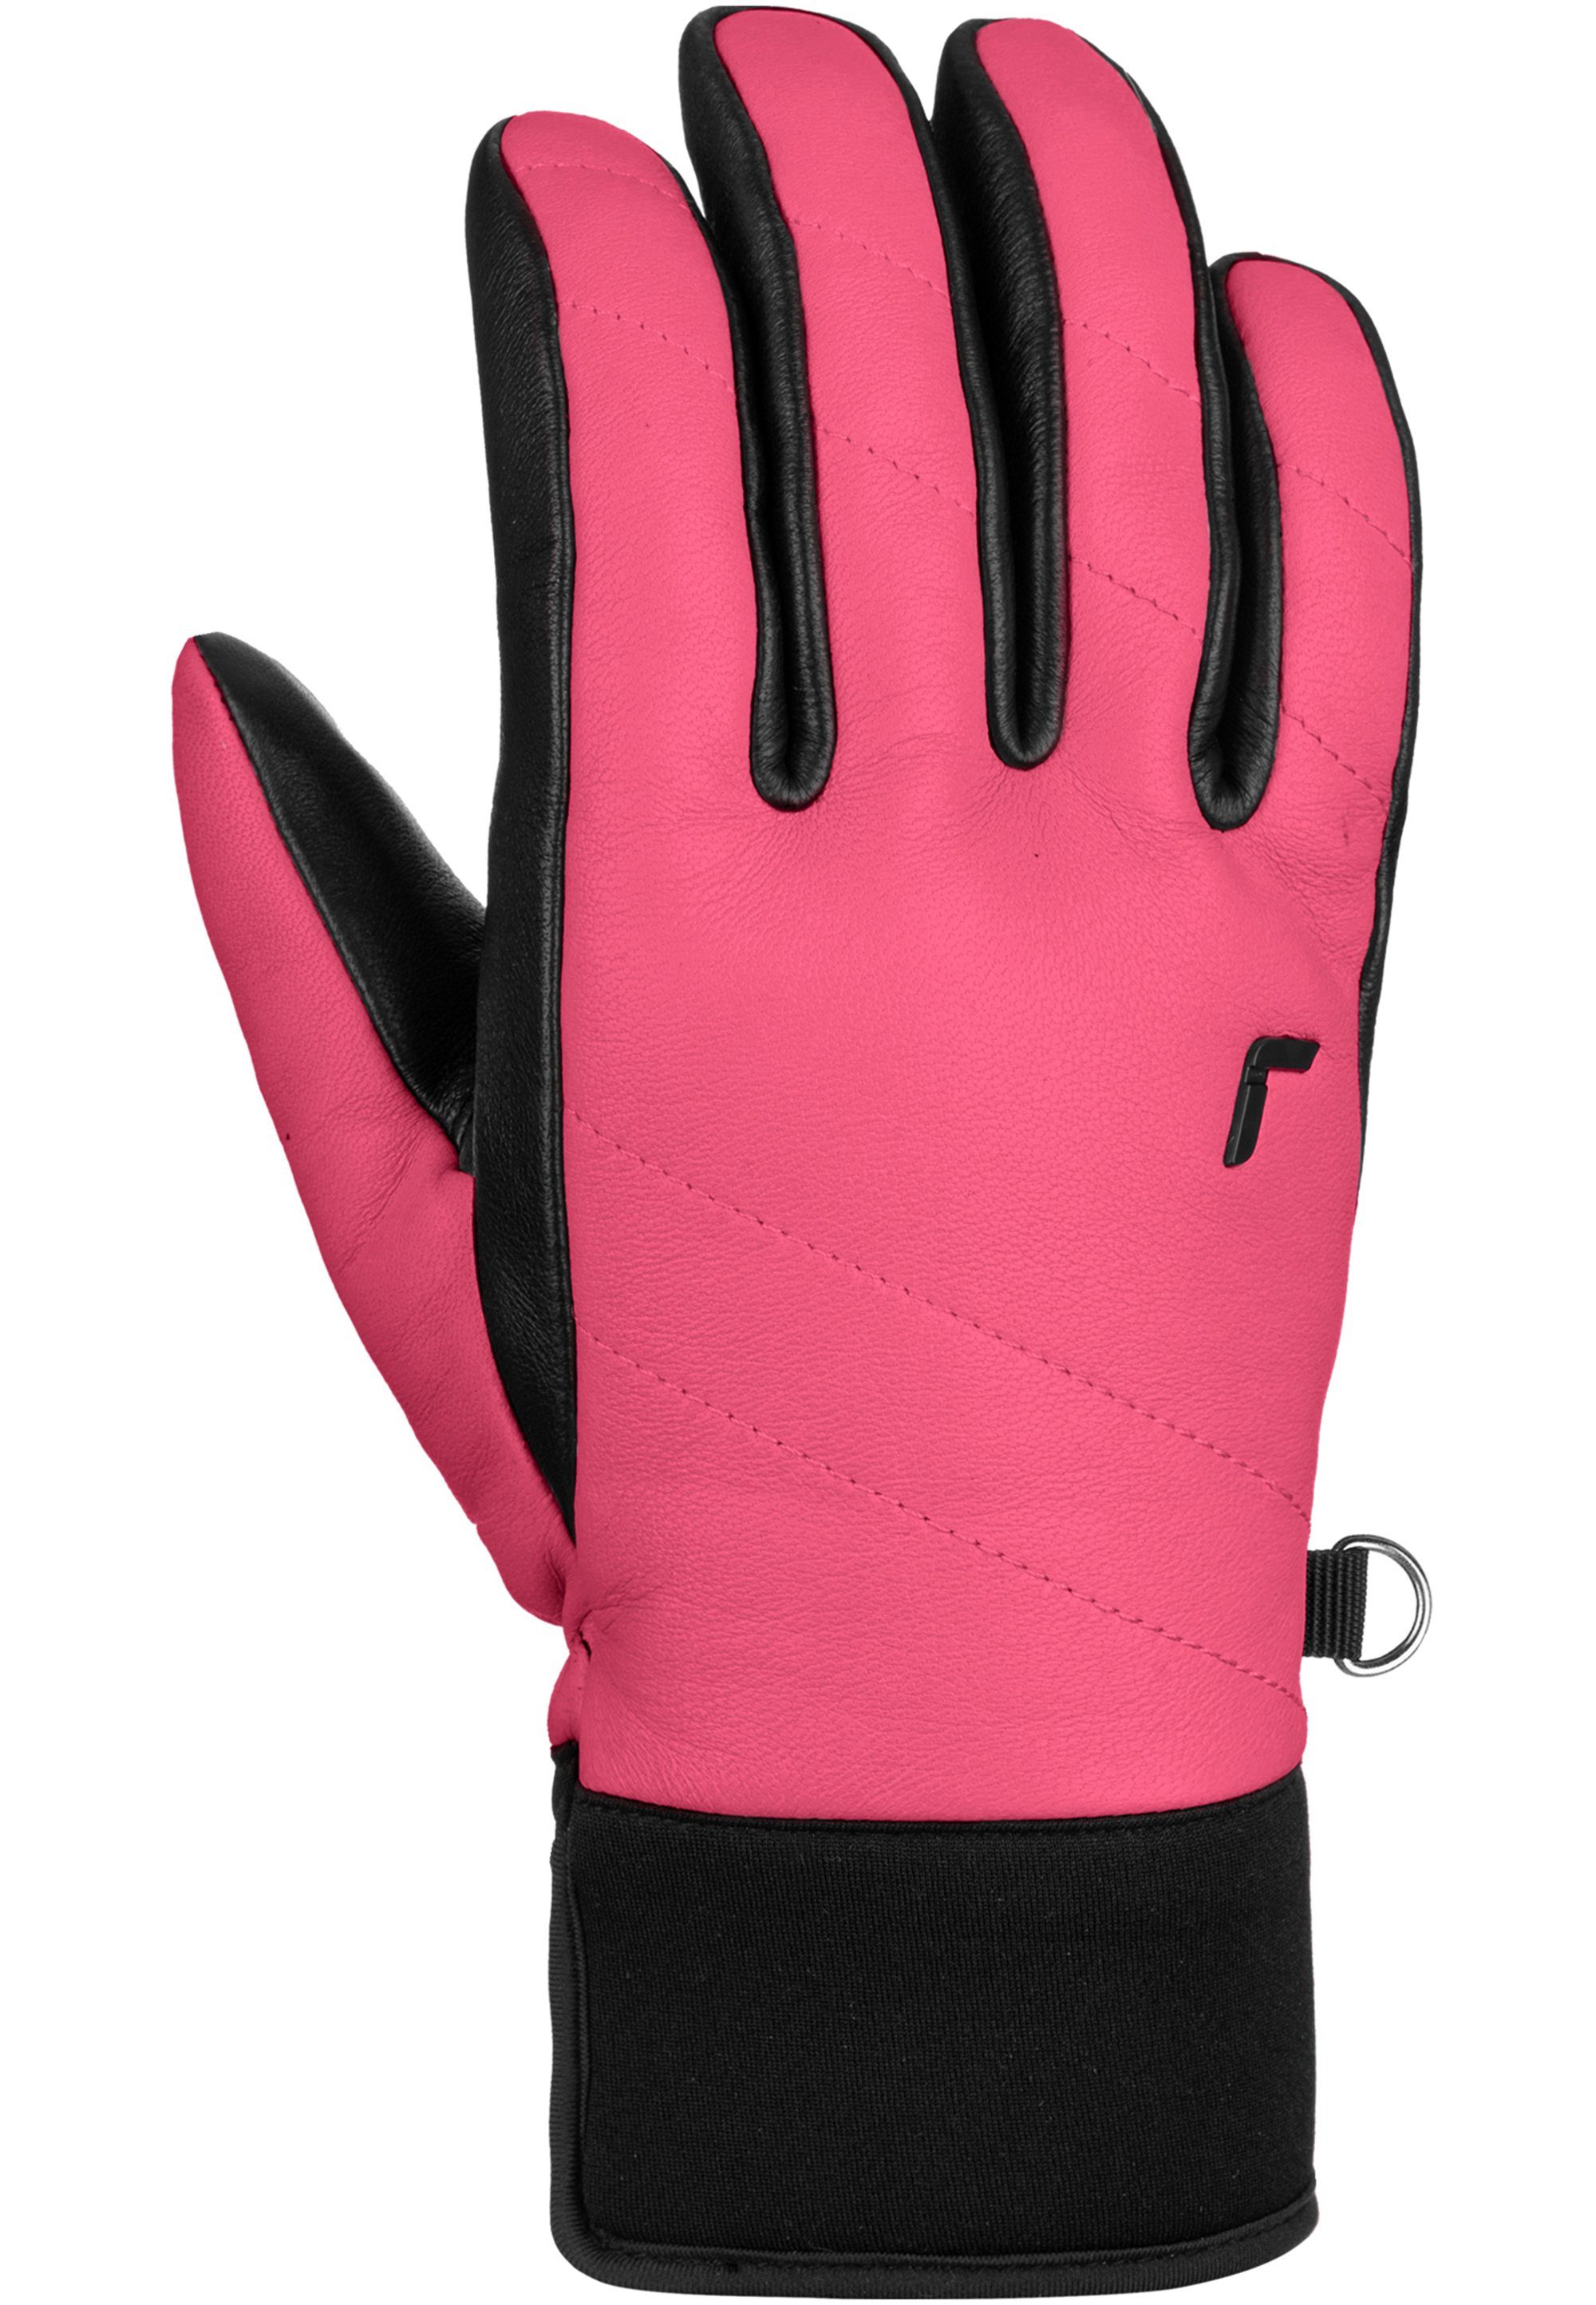 Lederarten verschiedenen aus Juliette Skihandschuhe Reusch pink-schwarz